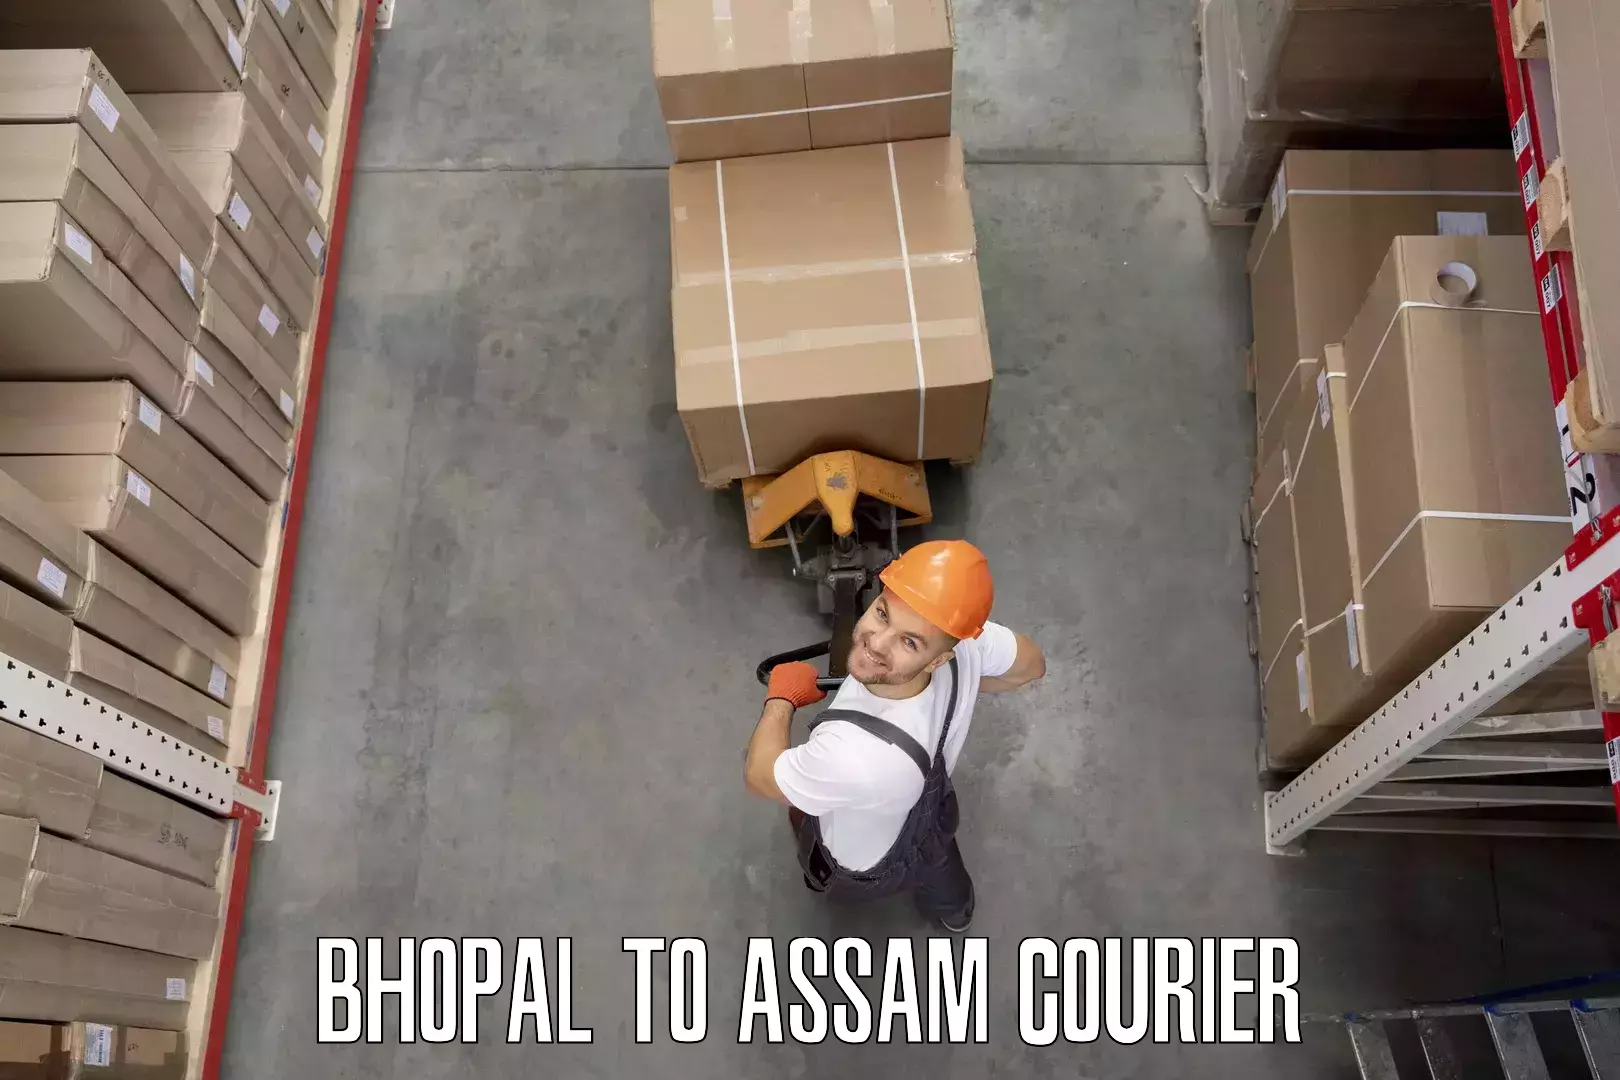 Household moving companies Bhopal to IIIT Guwahati